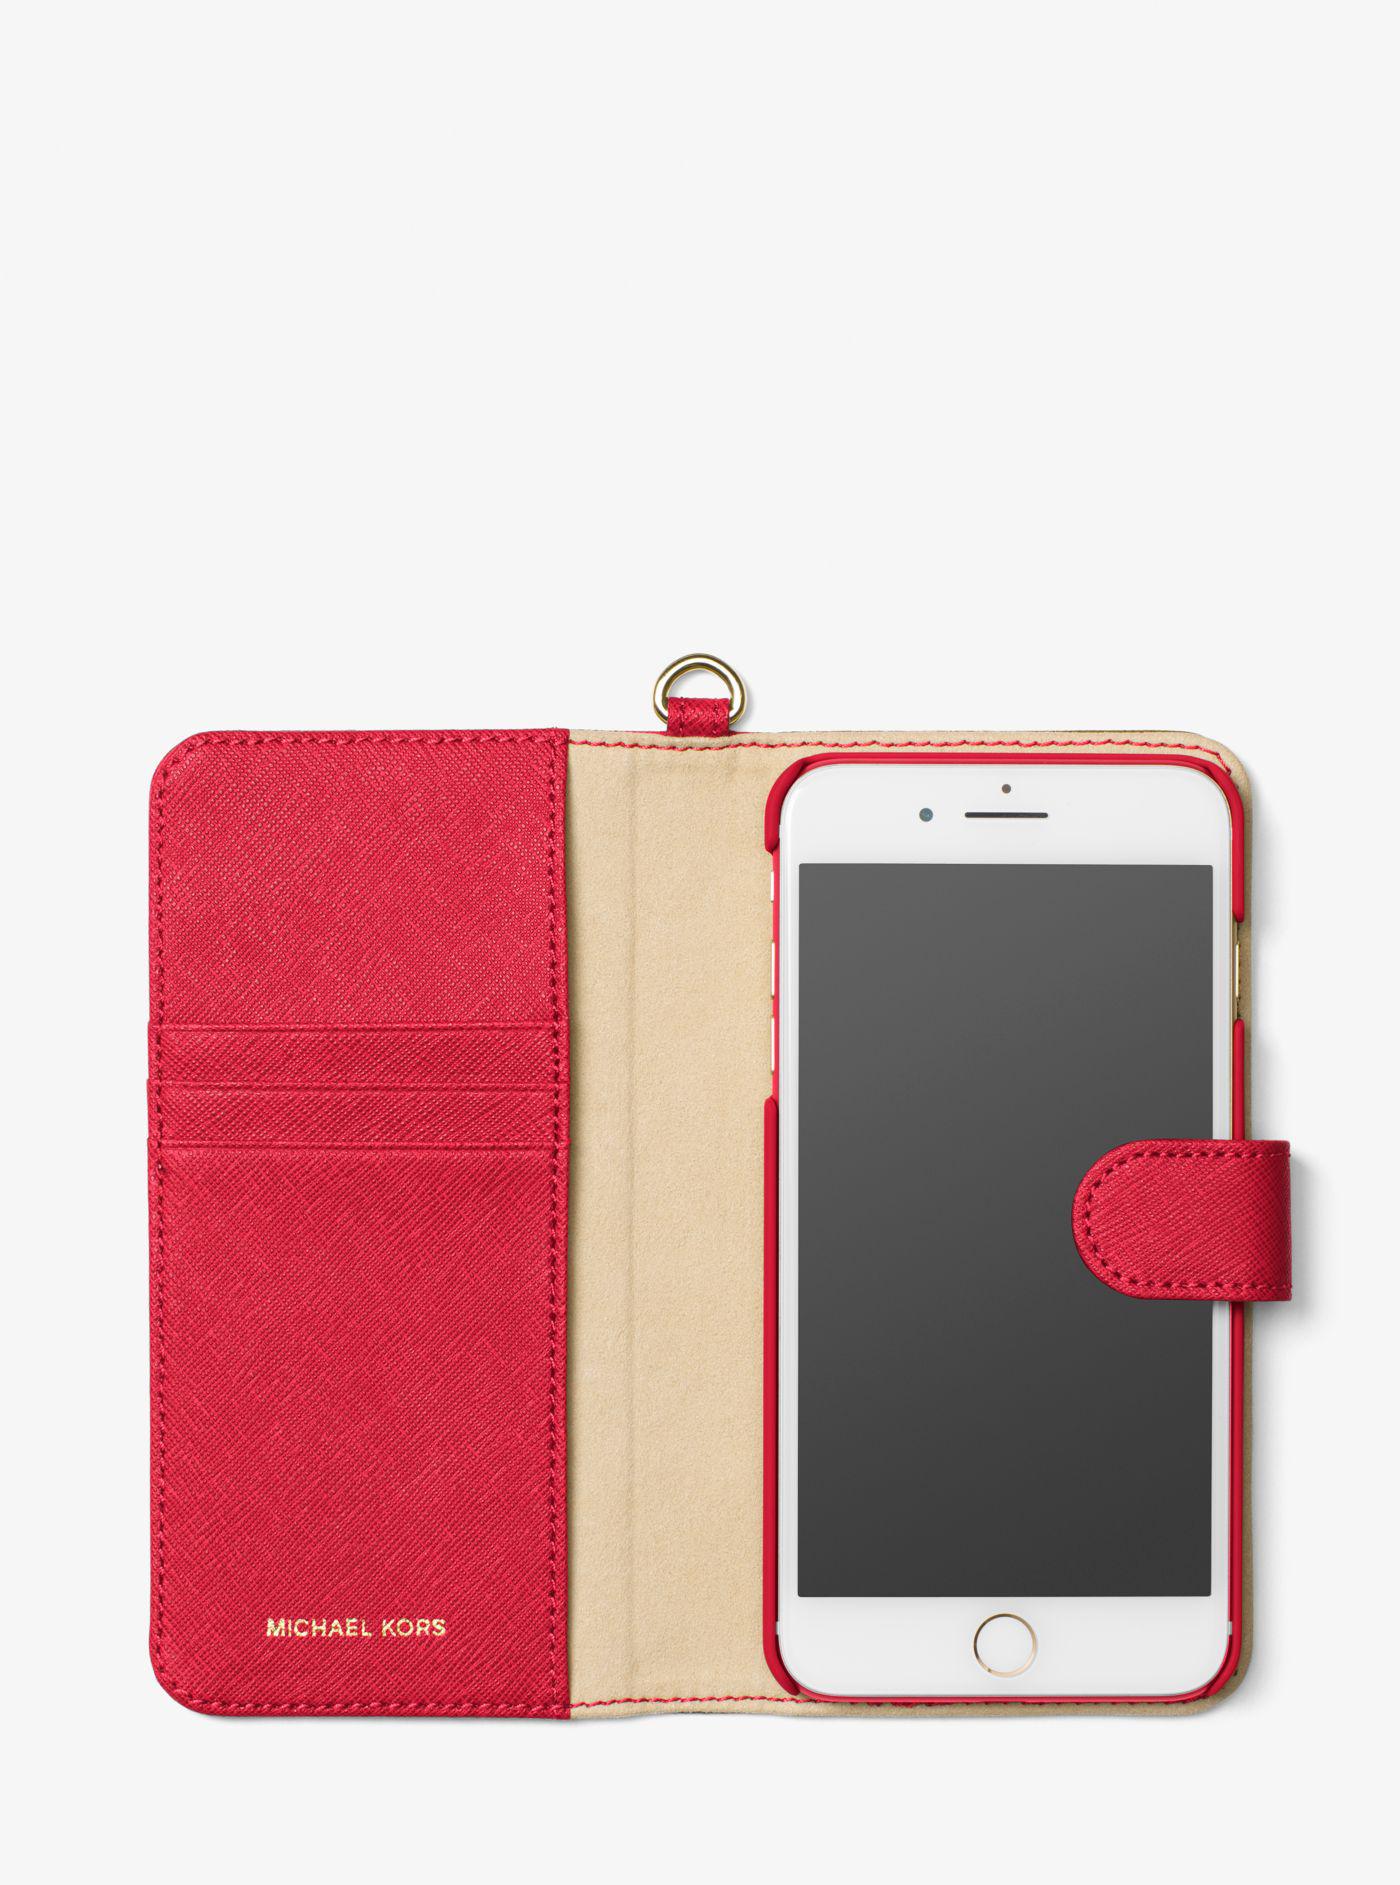 michael kors folio phone case iphone 7 plus